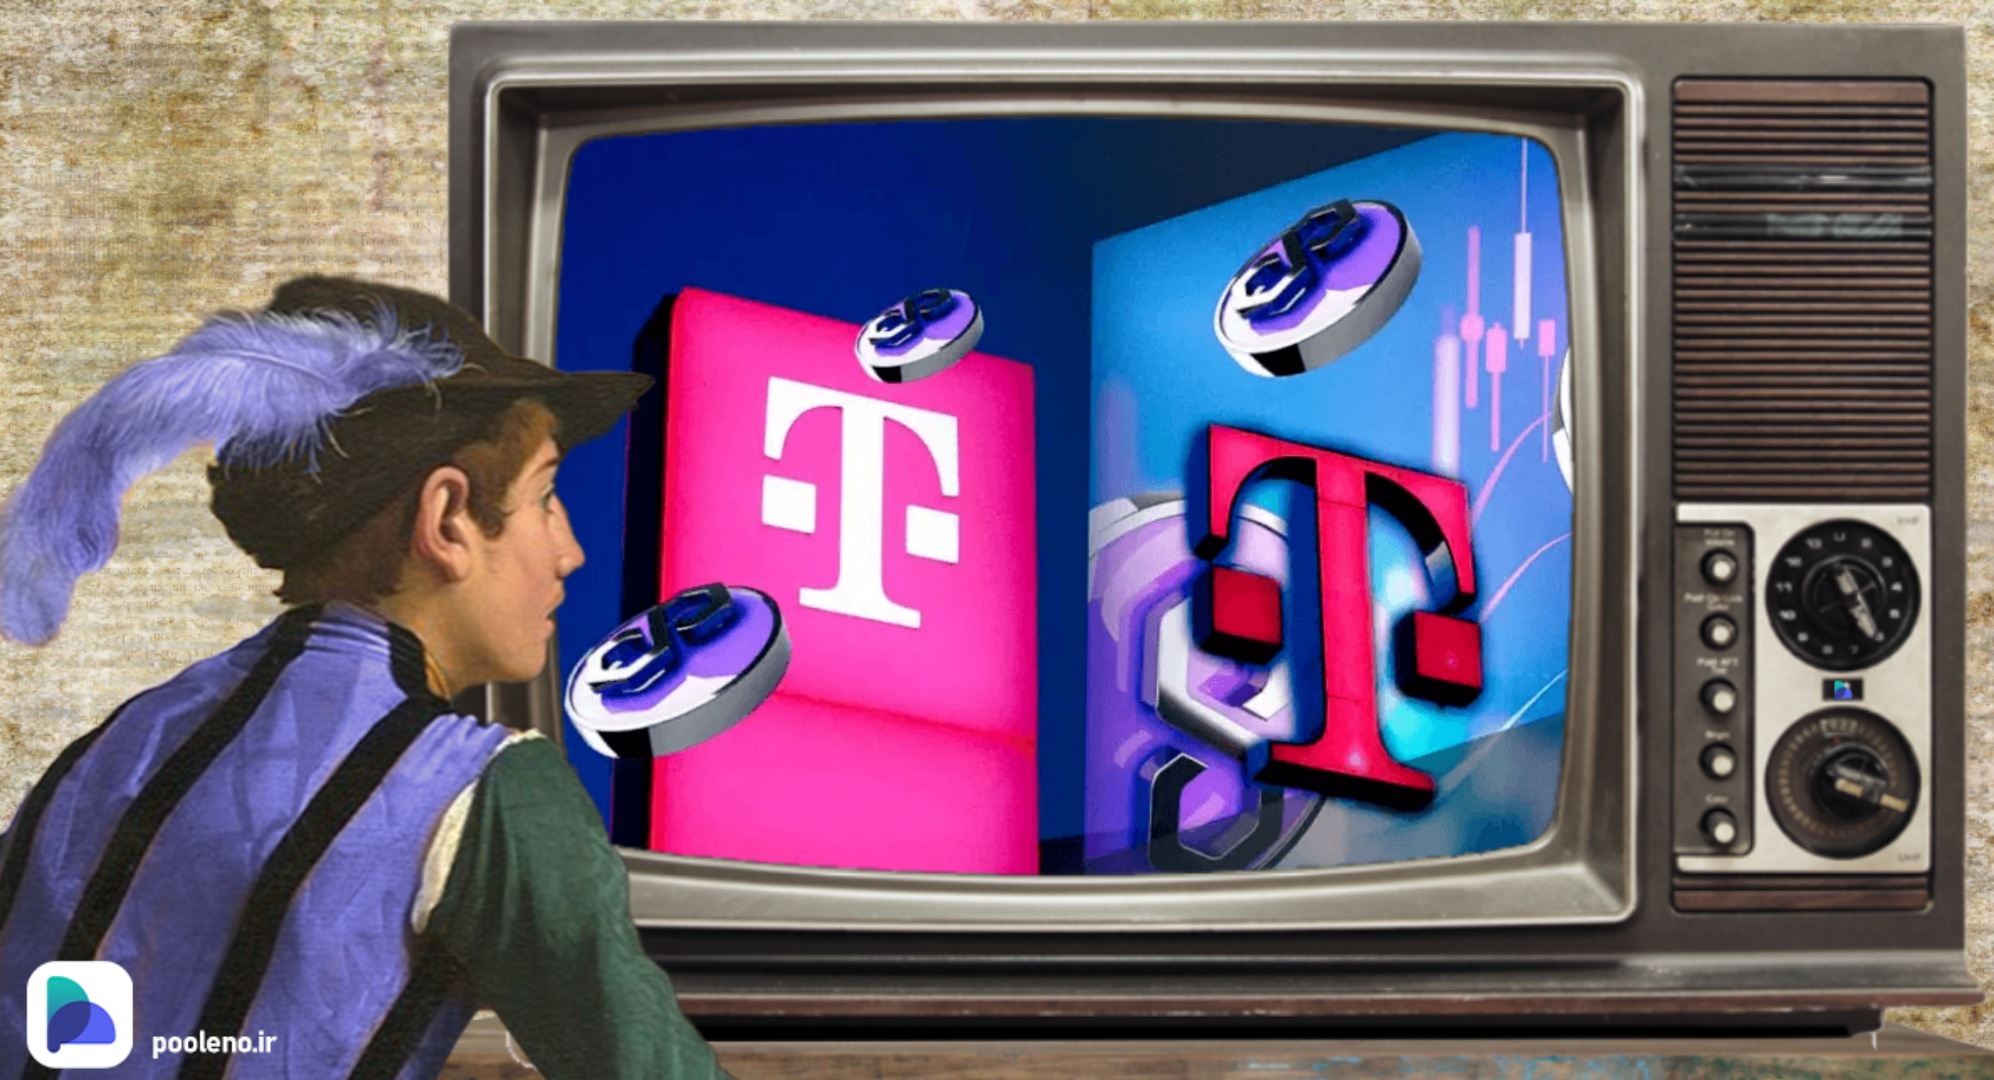 داچه تلکام (Deutsche Telekom) به عنوان اعتبارسنج به شبکهٔ پالیگان می‌پیوندد